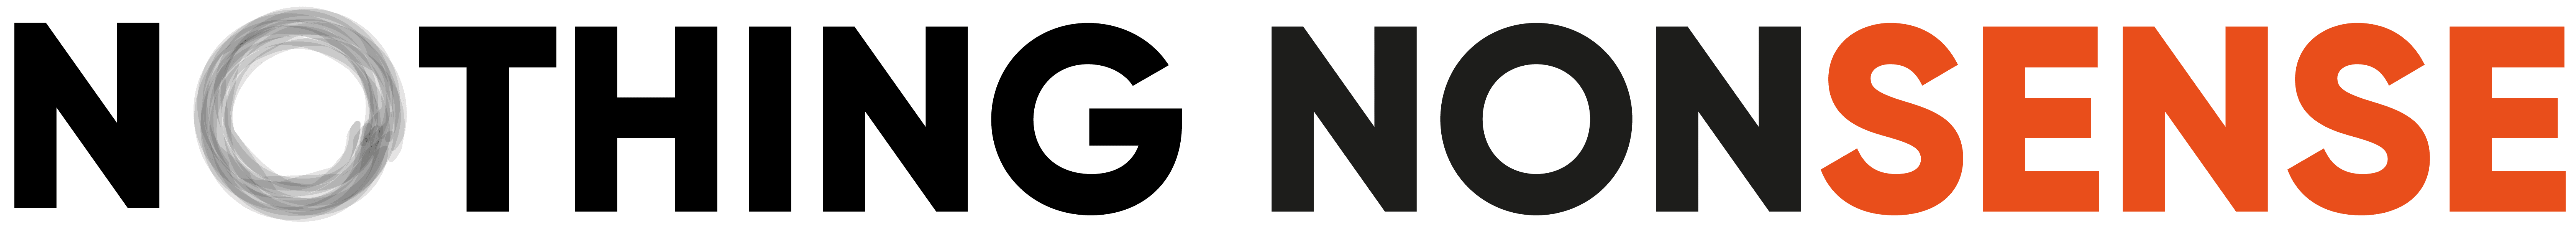 Nothing Nonsense logo-01